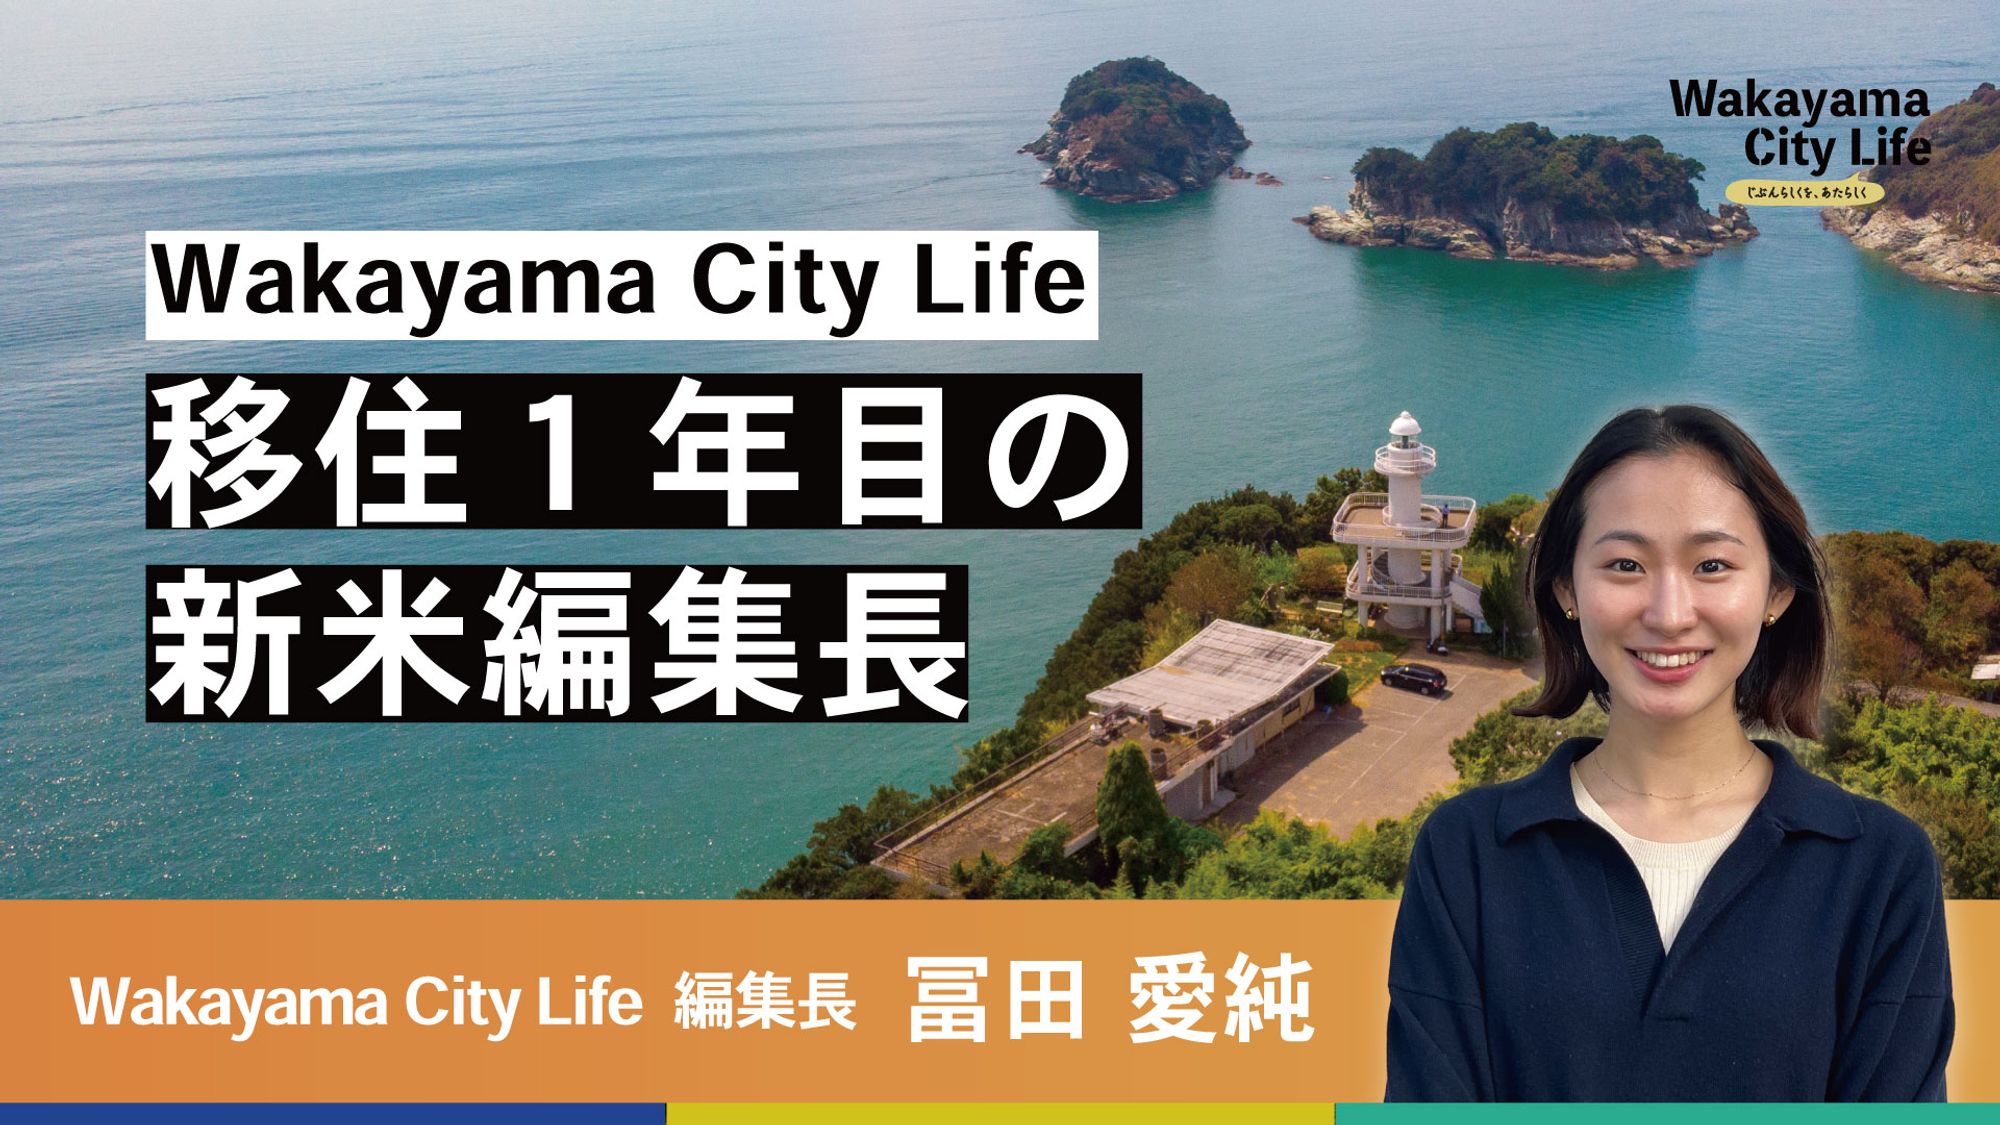 移住1年目の新米編集長がお届けするWakayama City Life、はじまります。